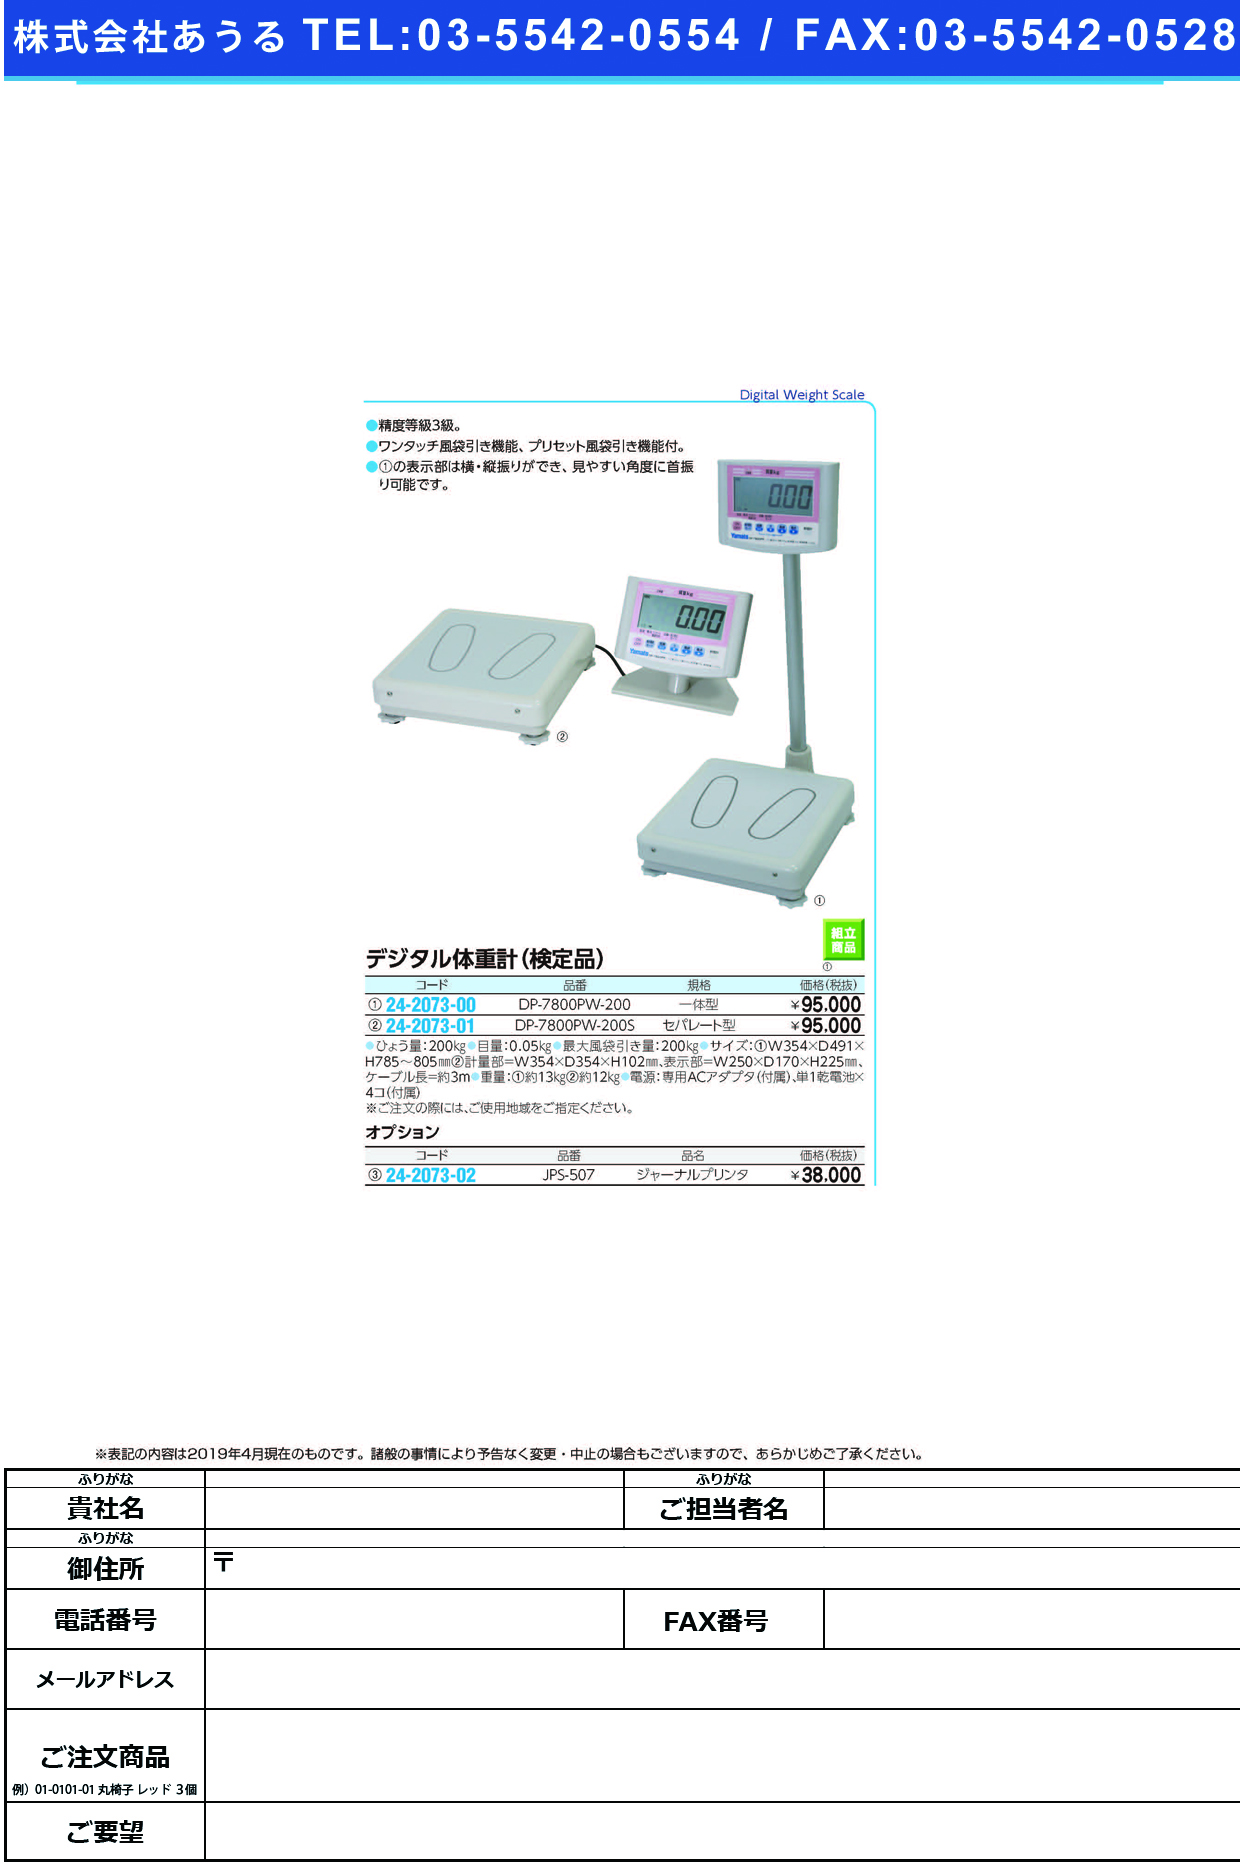 (24-2073-00)ヤマトデジタル体重計（検定付） DP-7800PW-200ｲｯﾀｲｶﾞﾀ ﾔﾏﾄﾃﾞｼﾞﾀﾙﾀｲｼﾞｭｳｹｲ【1台単位】【2019年カタログ商品】